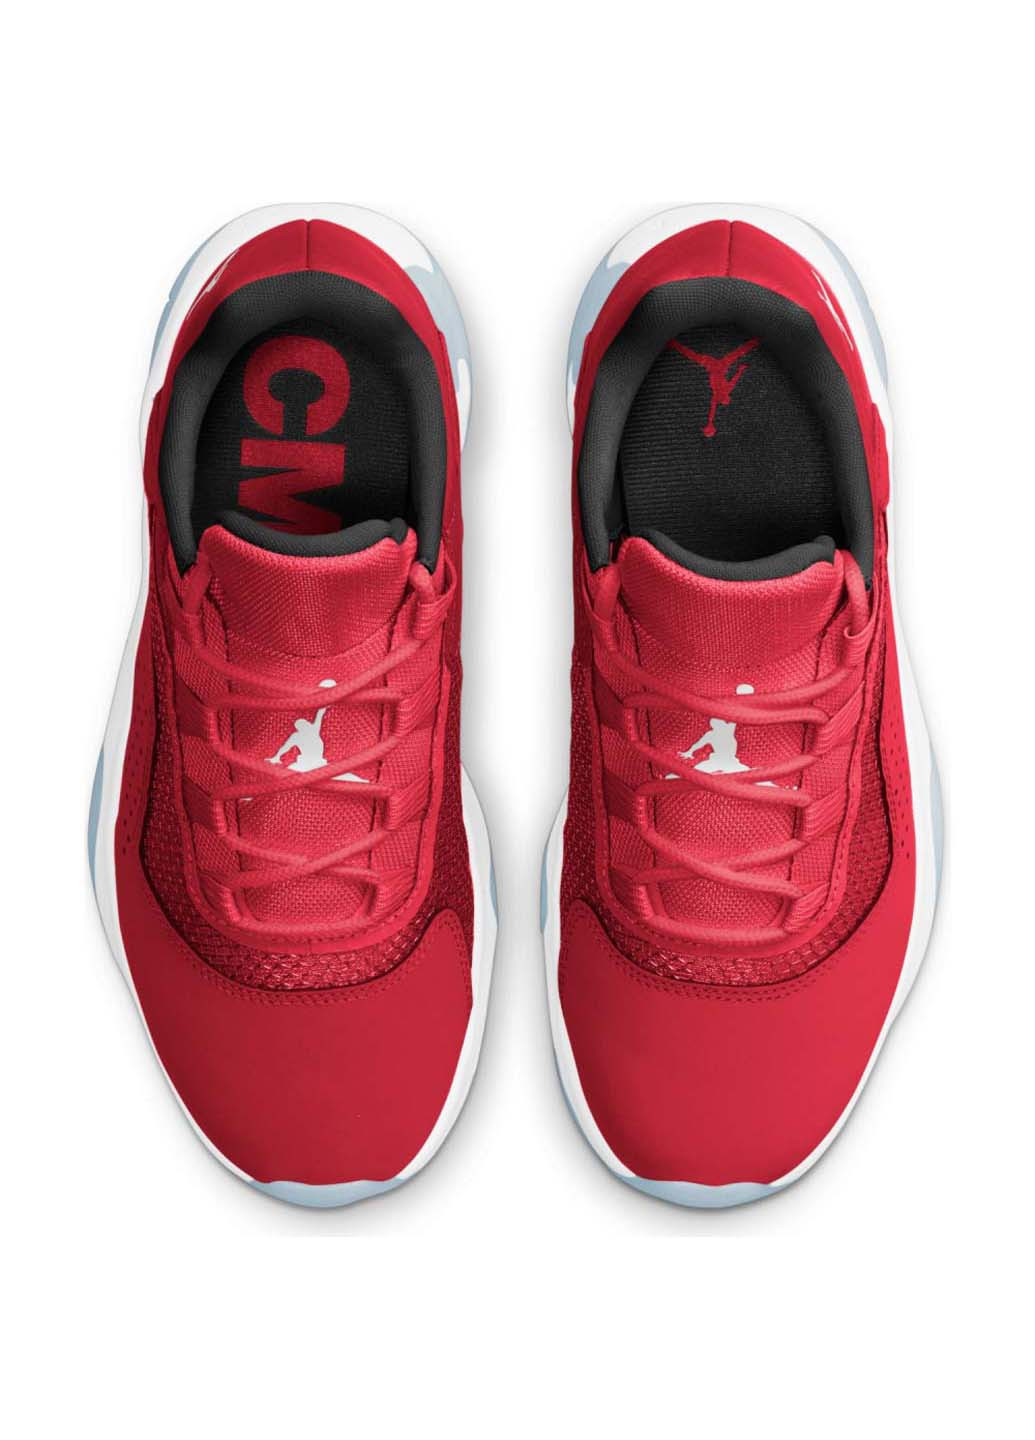 Цветные демисезонные кроссовки Jordan